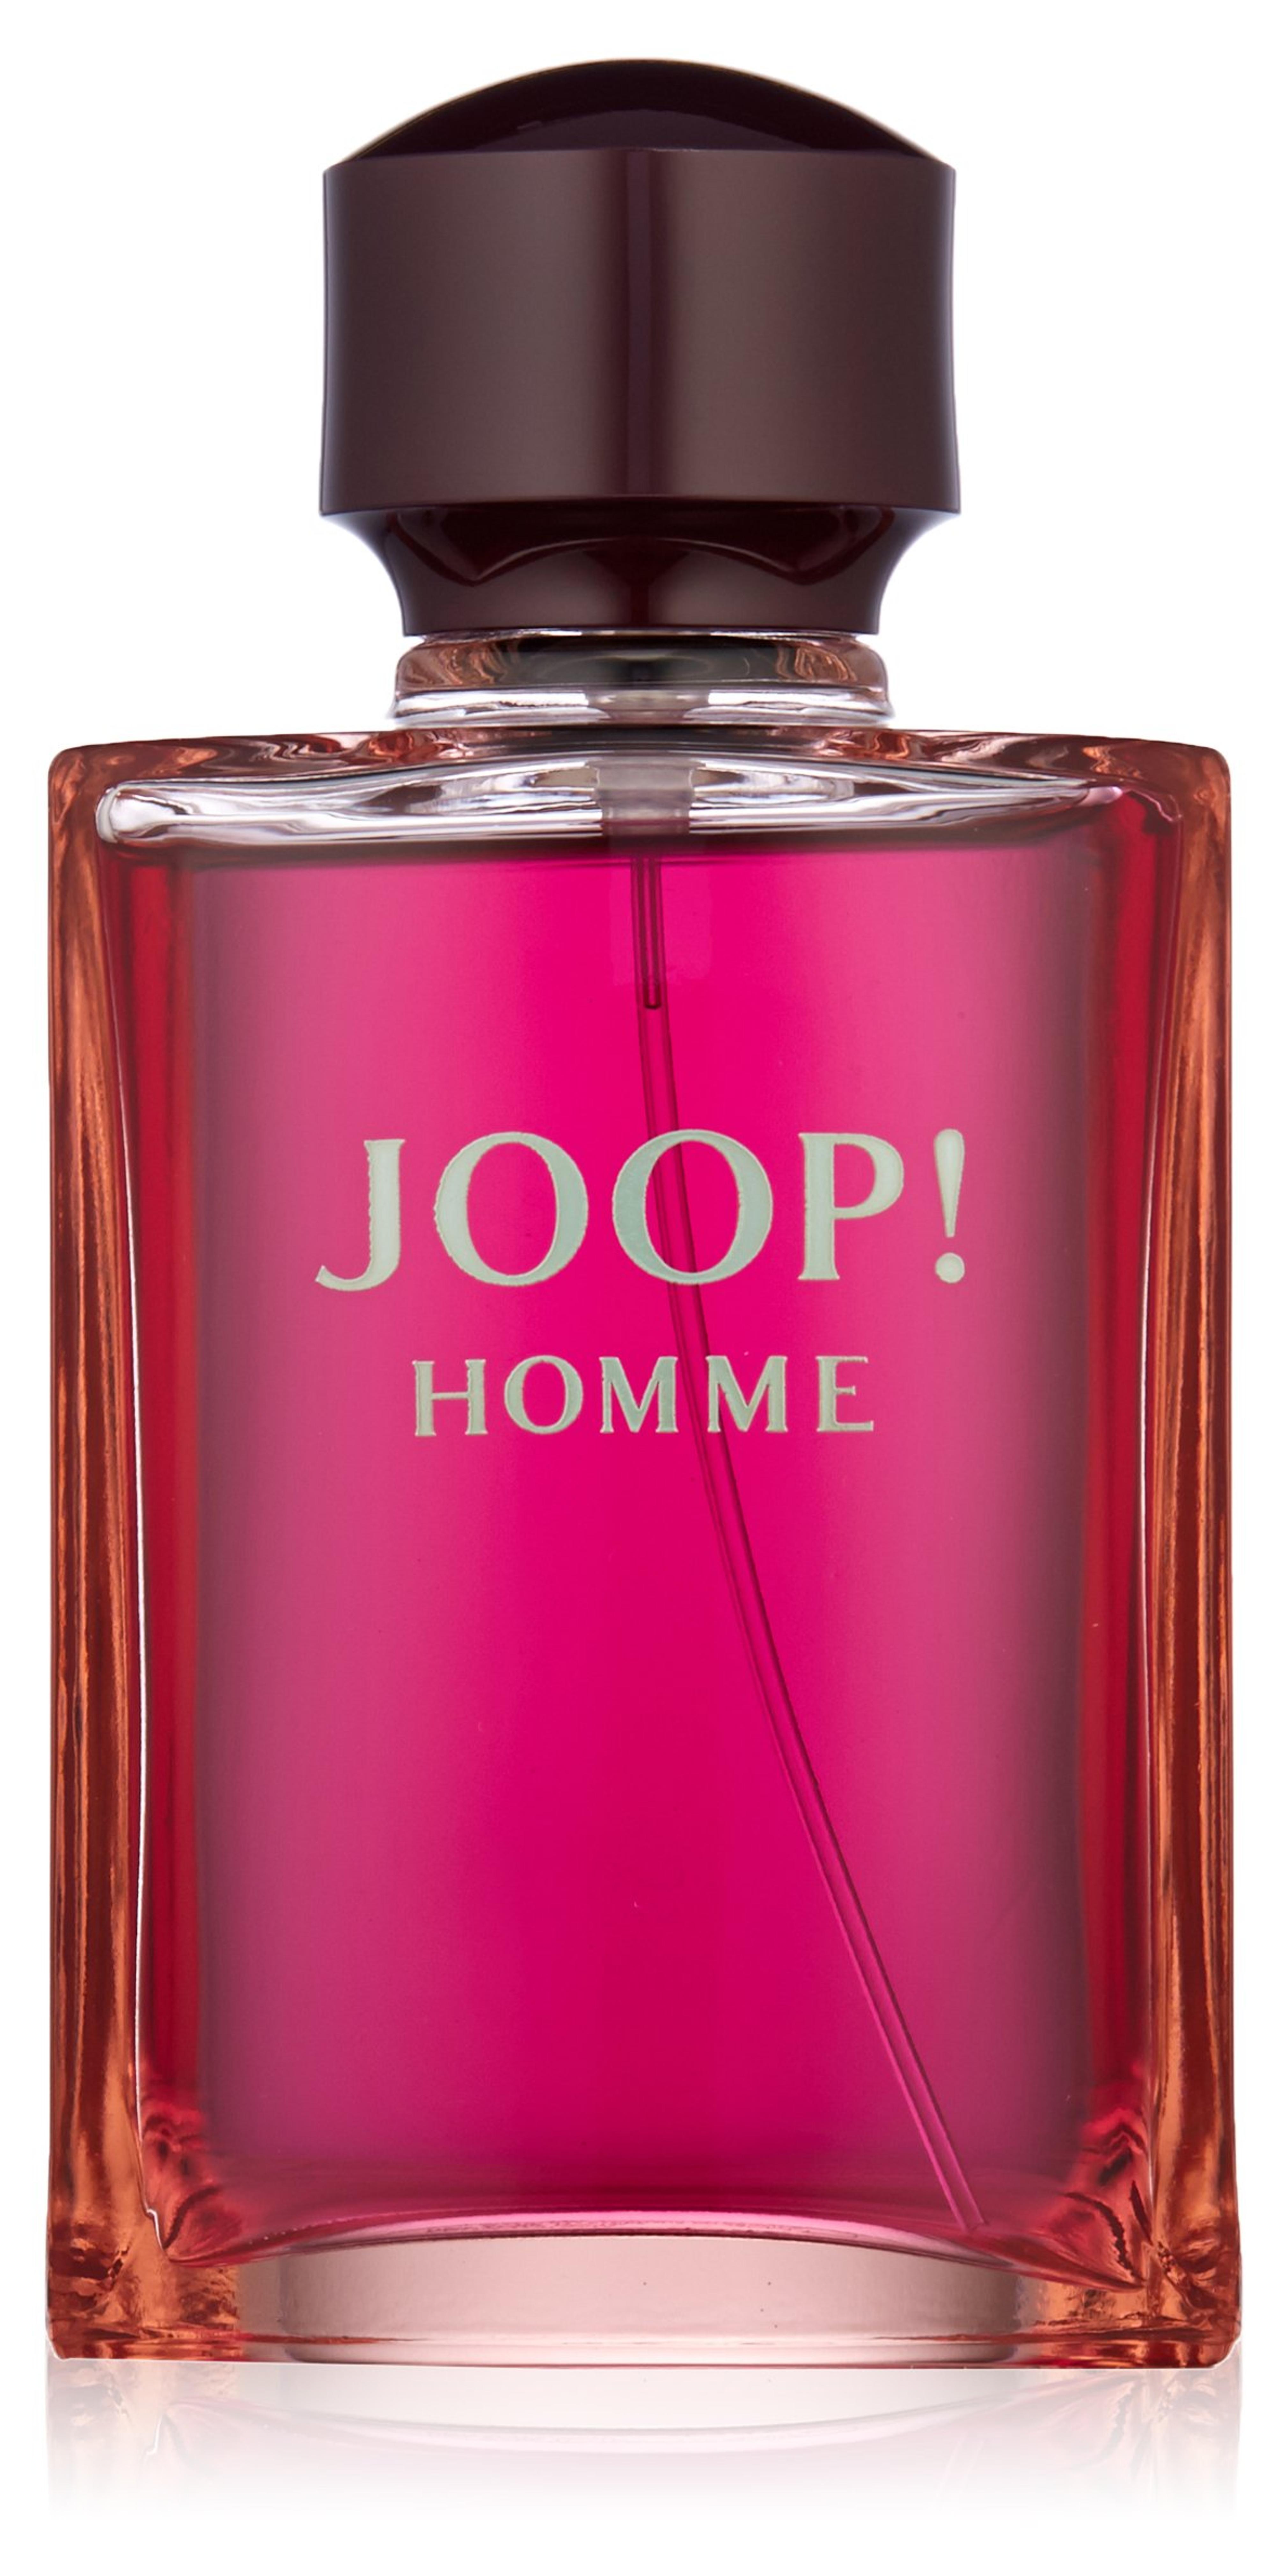 Amazon.com : Joop Pour Homme Eau de Toilette Spray for Men, 4.2 Fluid Ounce : Beauty & Personal Care